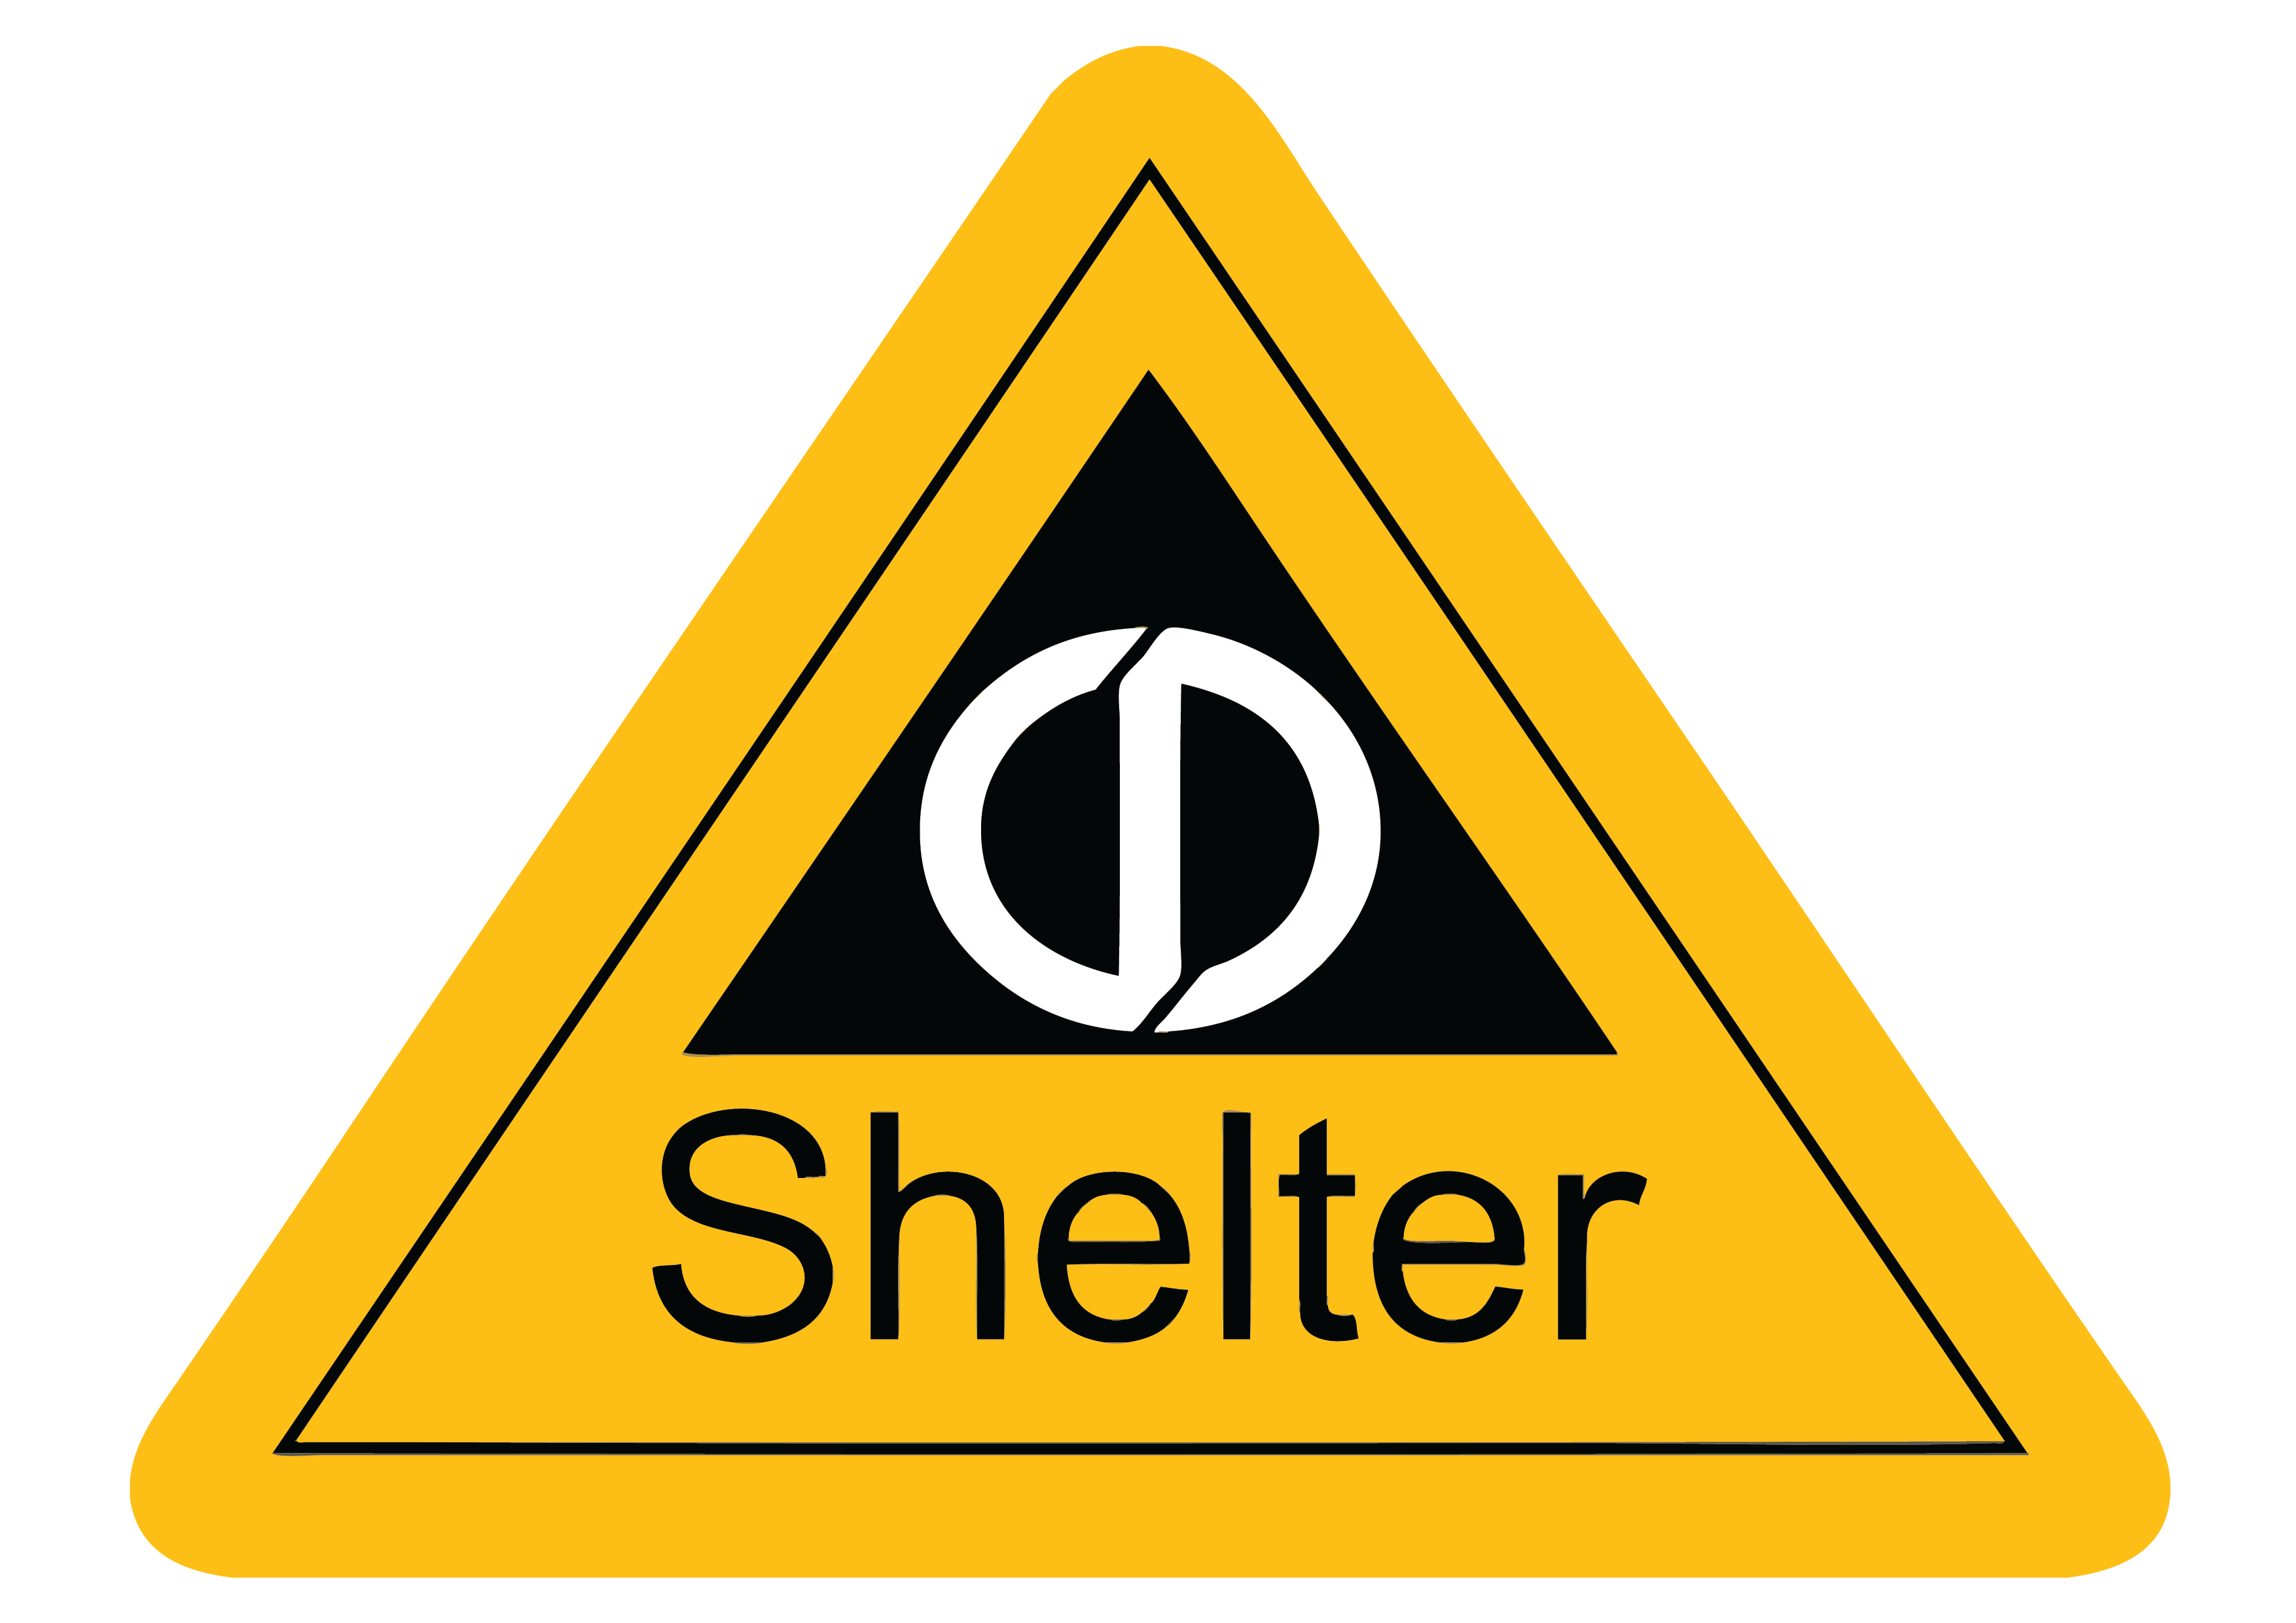 SCDF's civil defence shelter sign